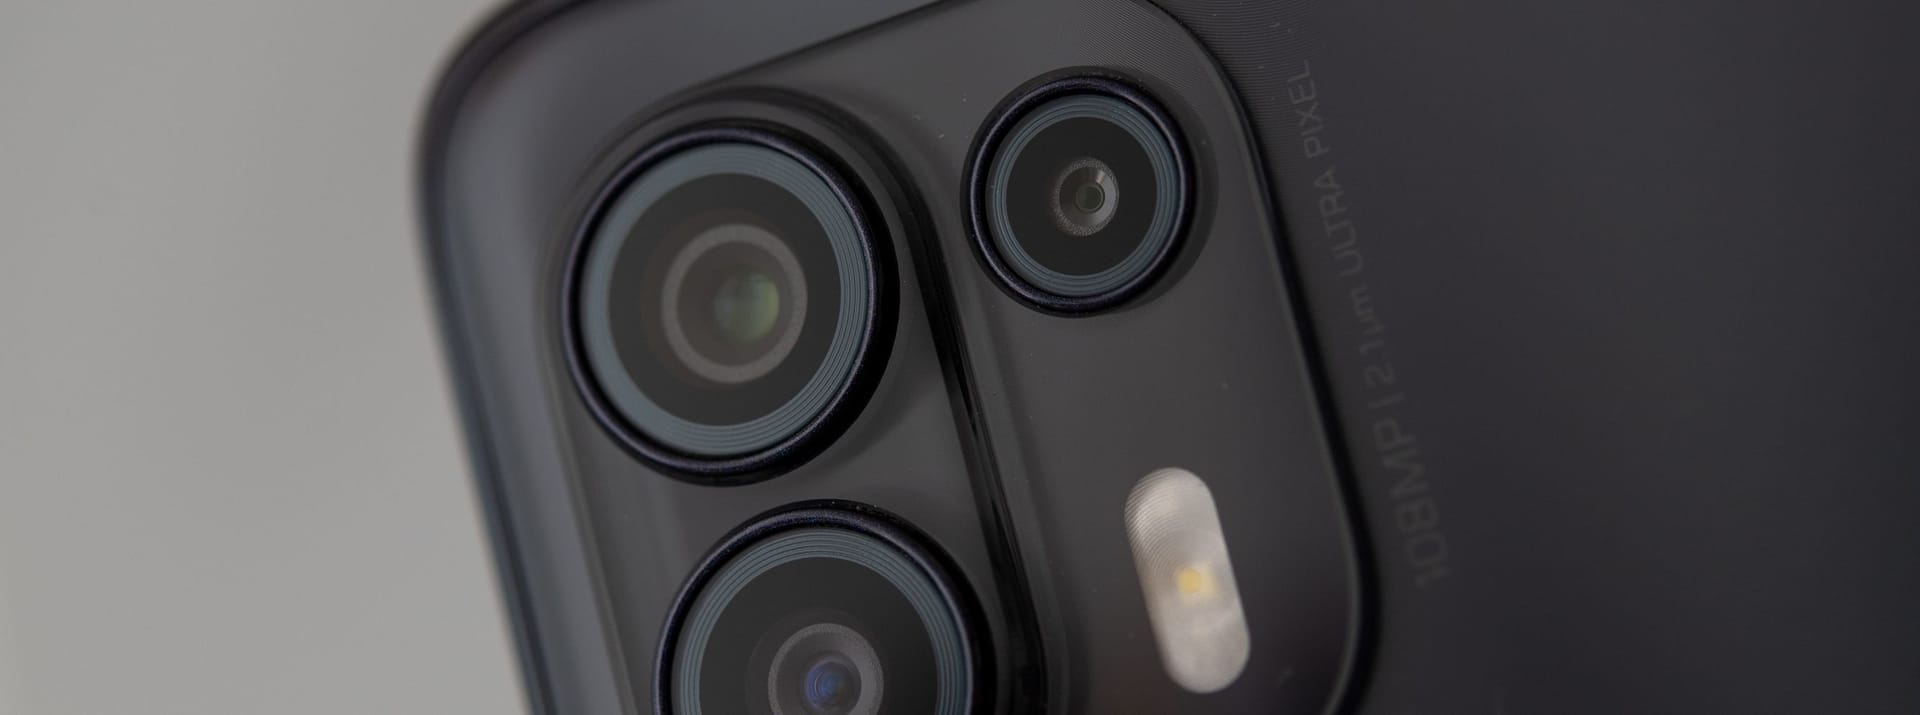 Beim Motorola Edge 20 Lite gibt es neben der Hauptkamera mit 108 Megapixeln noch eine Ultraweitwinkelkamera. Die dritte Linse ist eine Kamera nur für Tiefeninformationen.